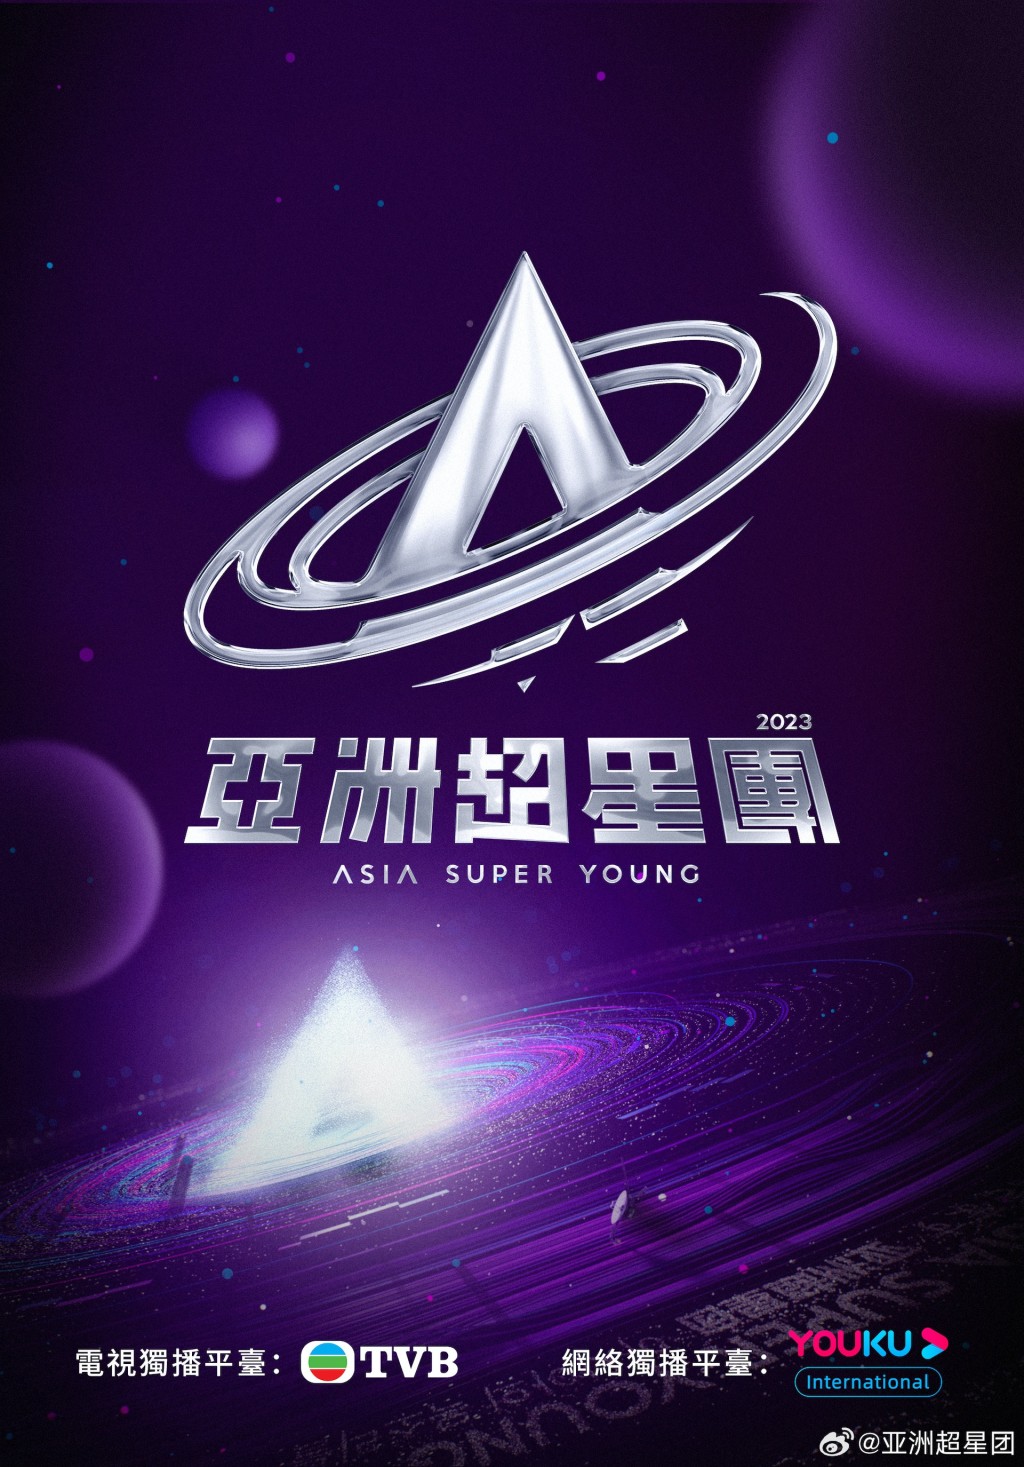 亞洲超星團為TVB與內地網絡平台優酷合作，將於本月25日首播。